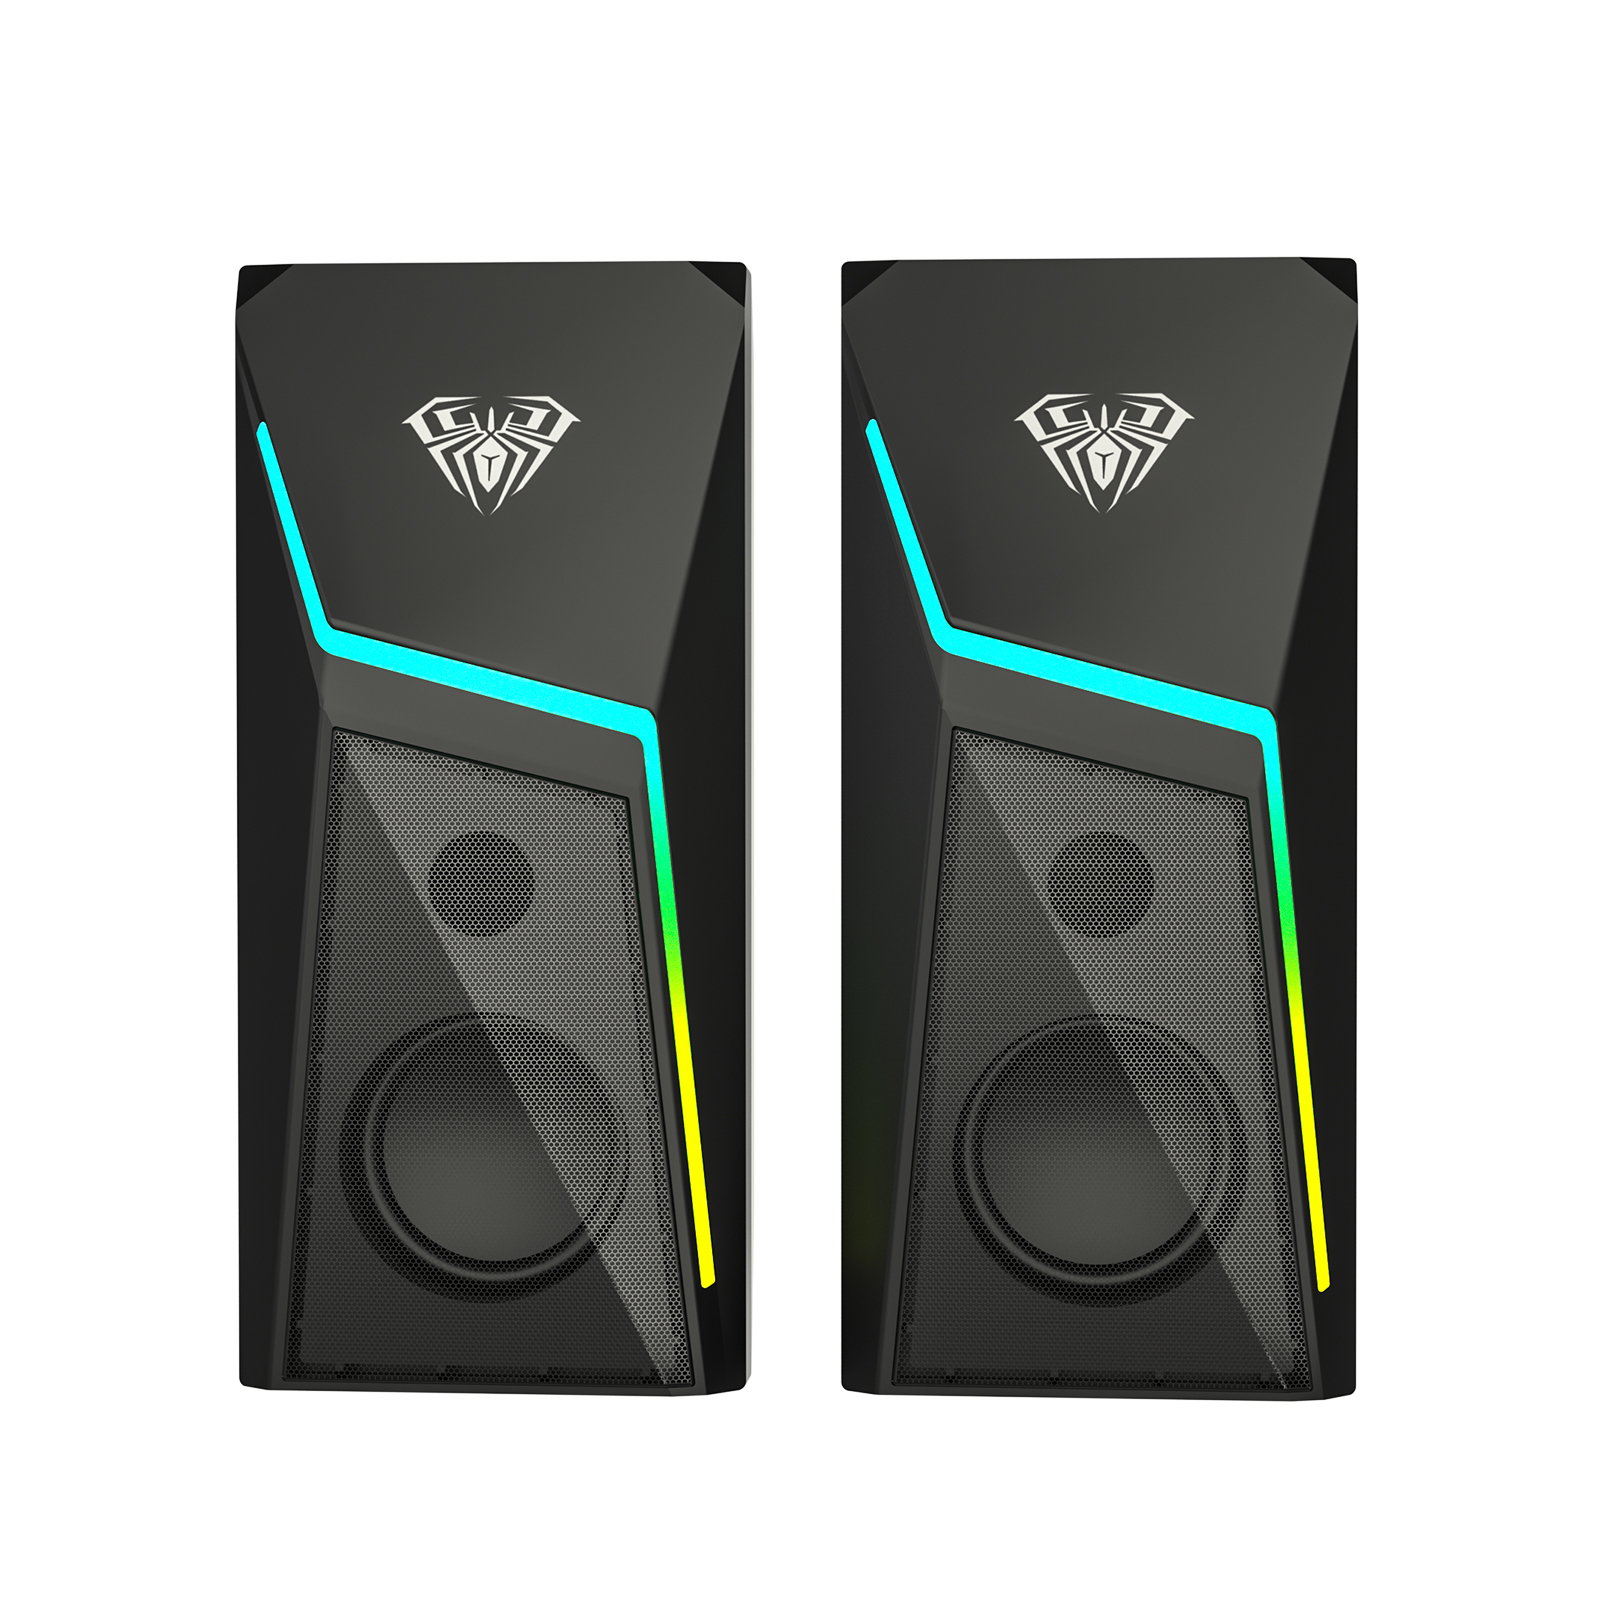 AULA N-521 Wired RGB Gaming Speakers